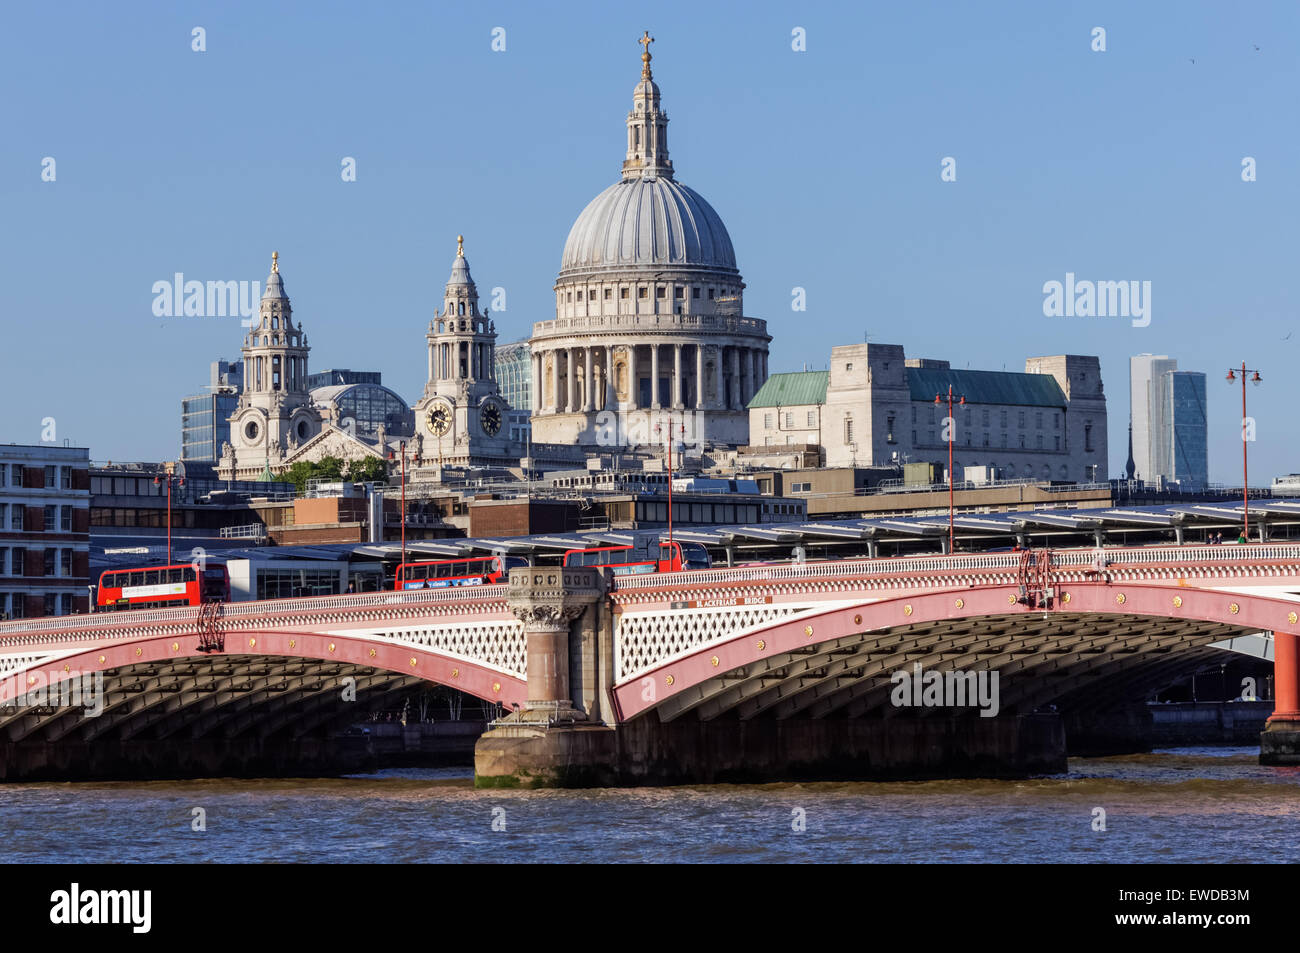 Blackfriars Bridge avec St Paul's Cathedral derrière, Londres Angleterre Royaume-Uni Banque D'Images